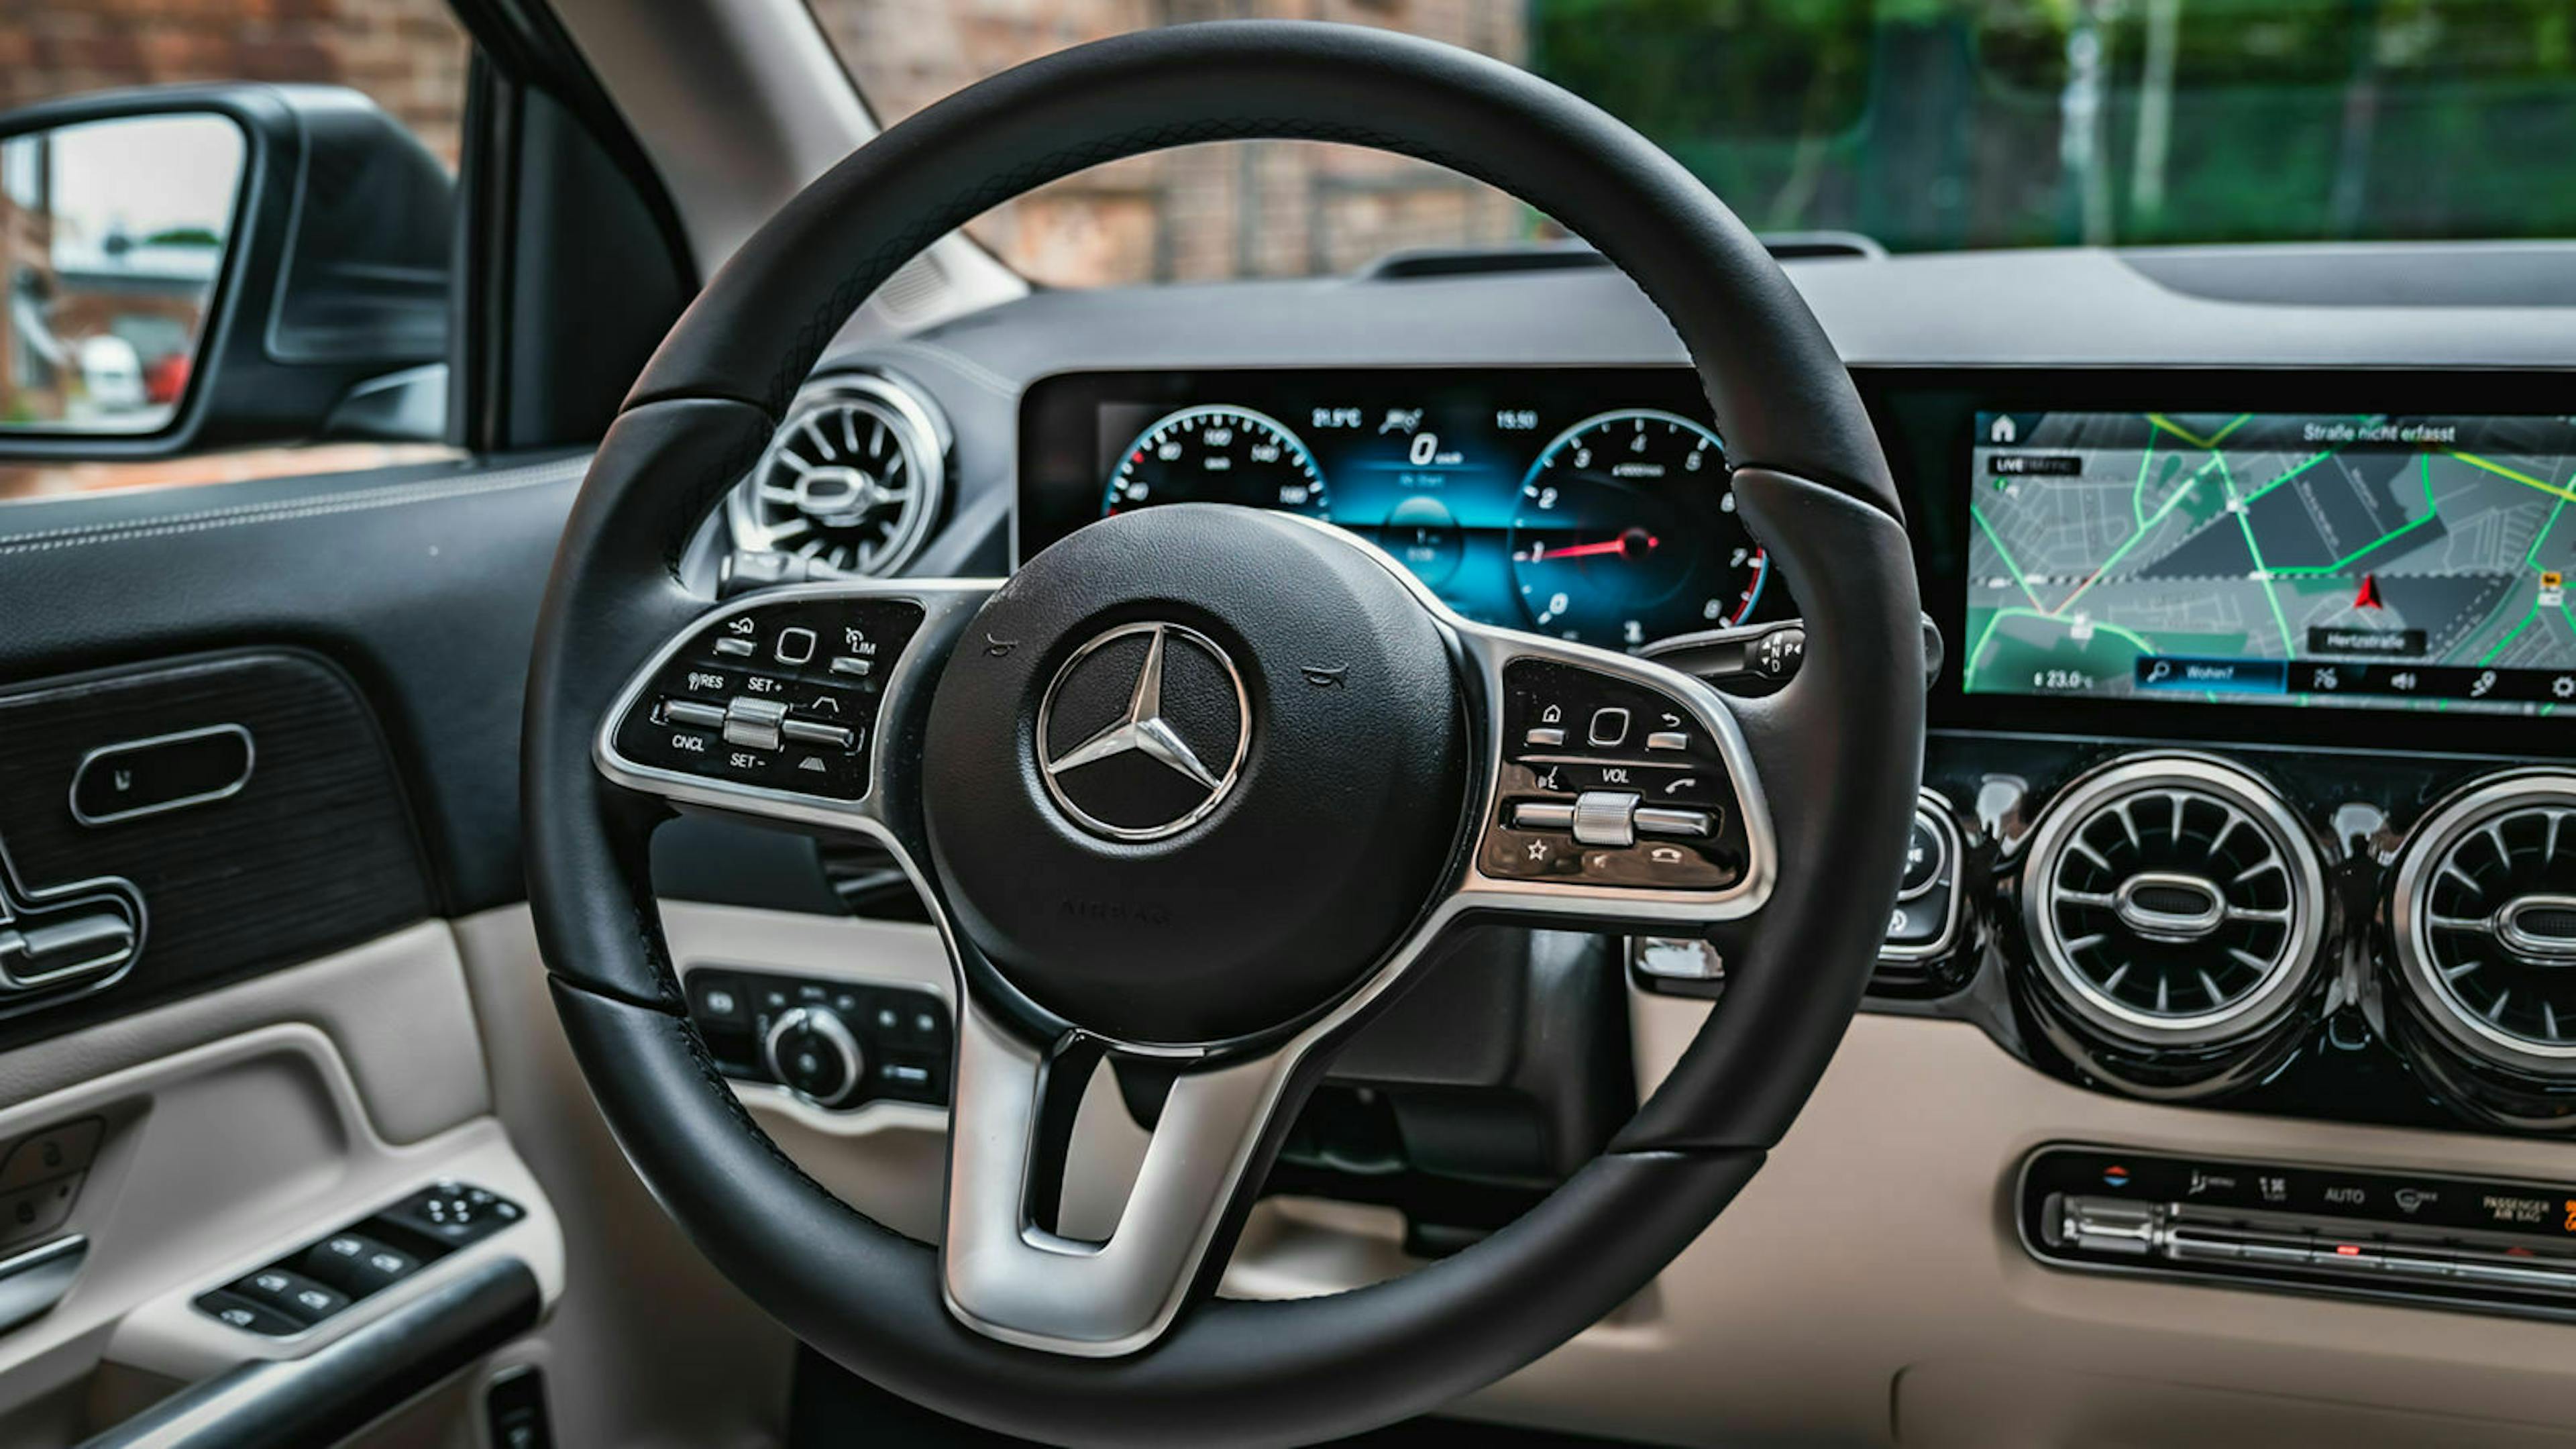 Zu sehen ist das Cockpit des Mercedes GLA 200